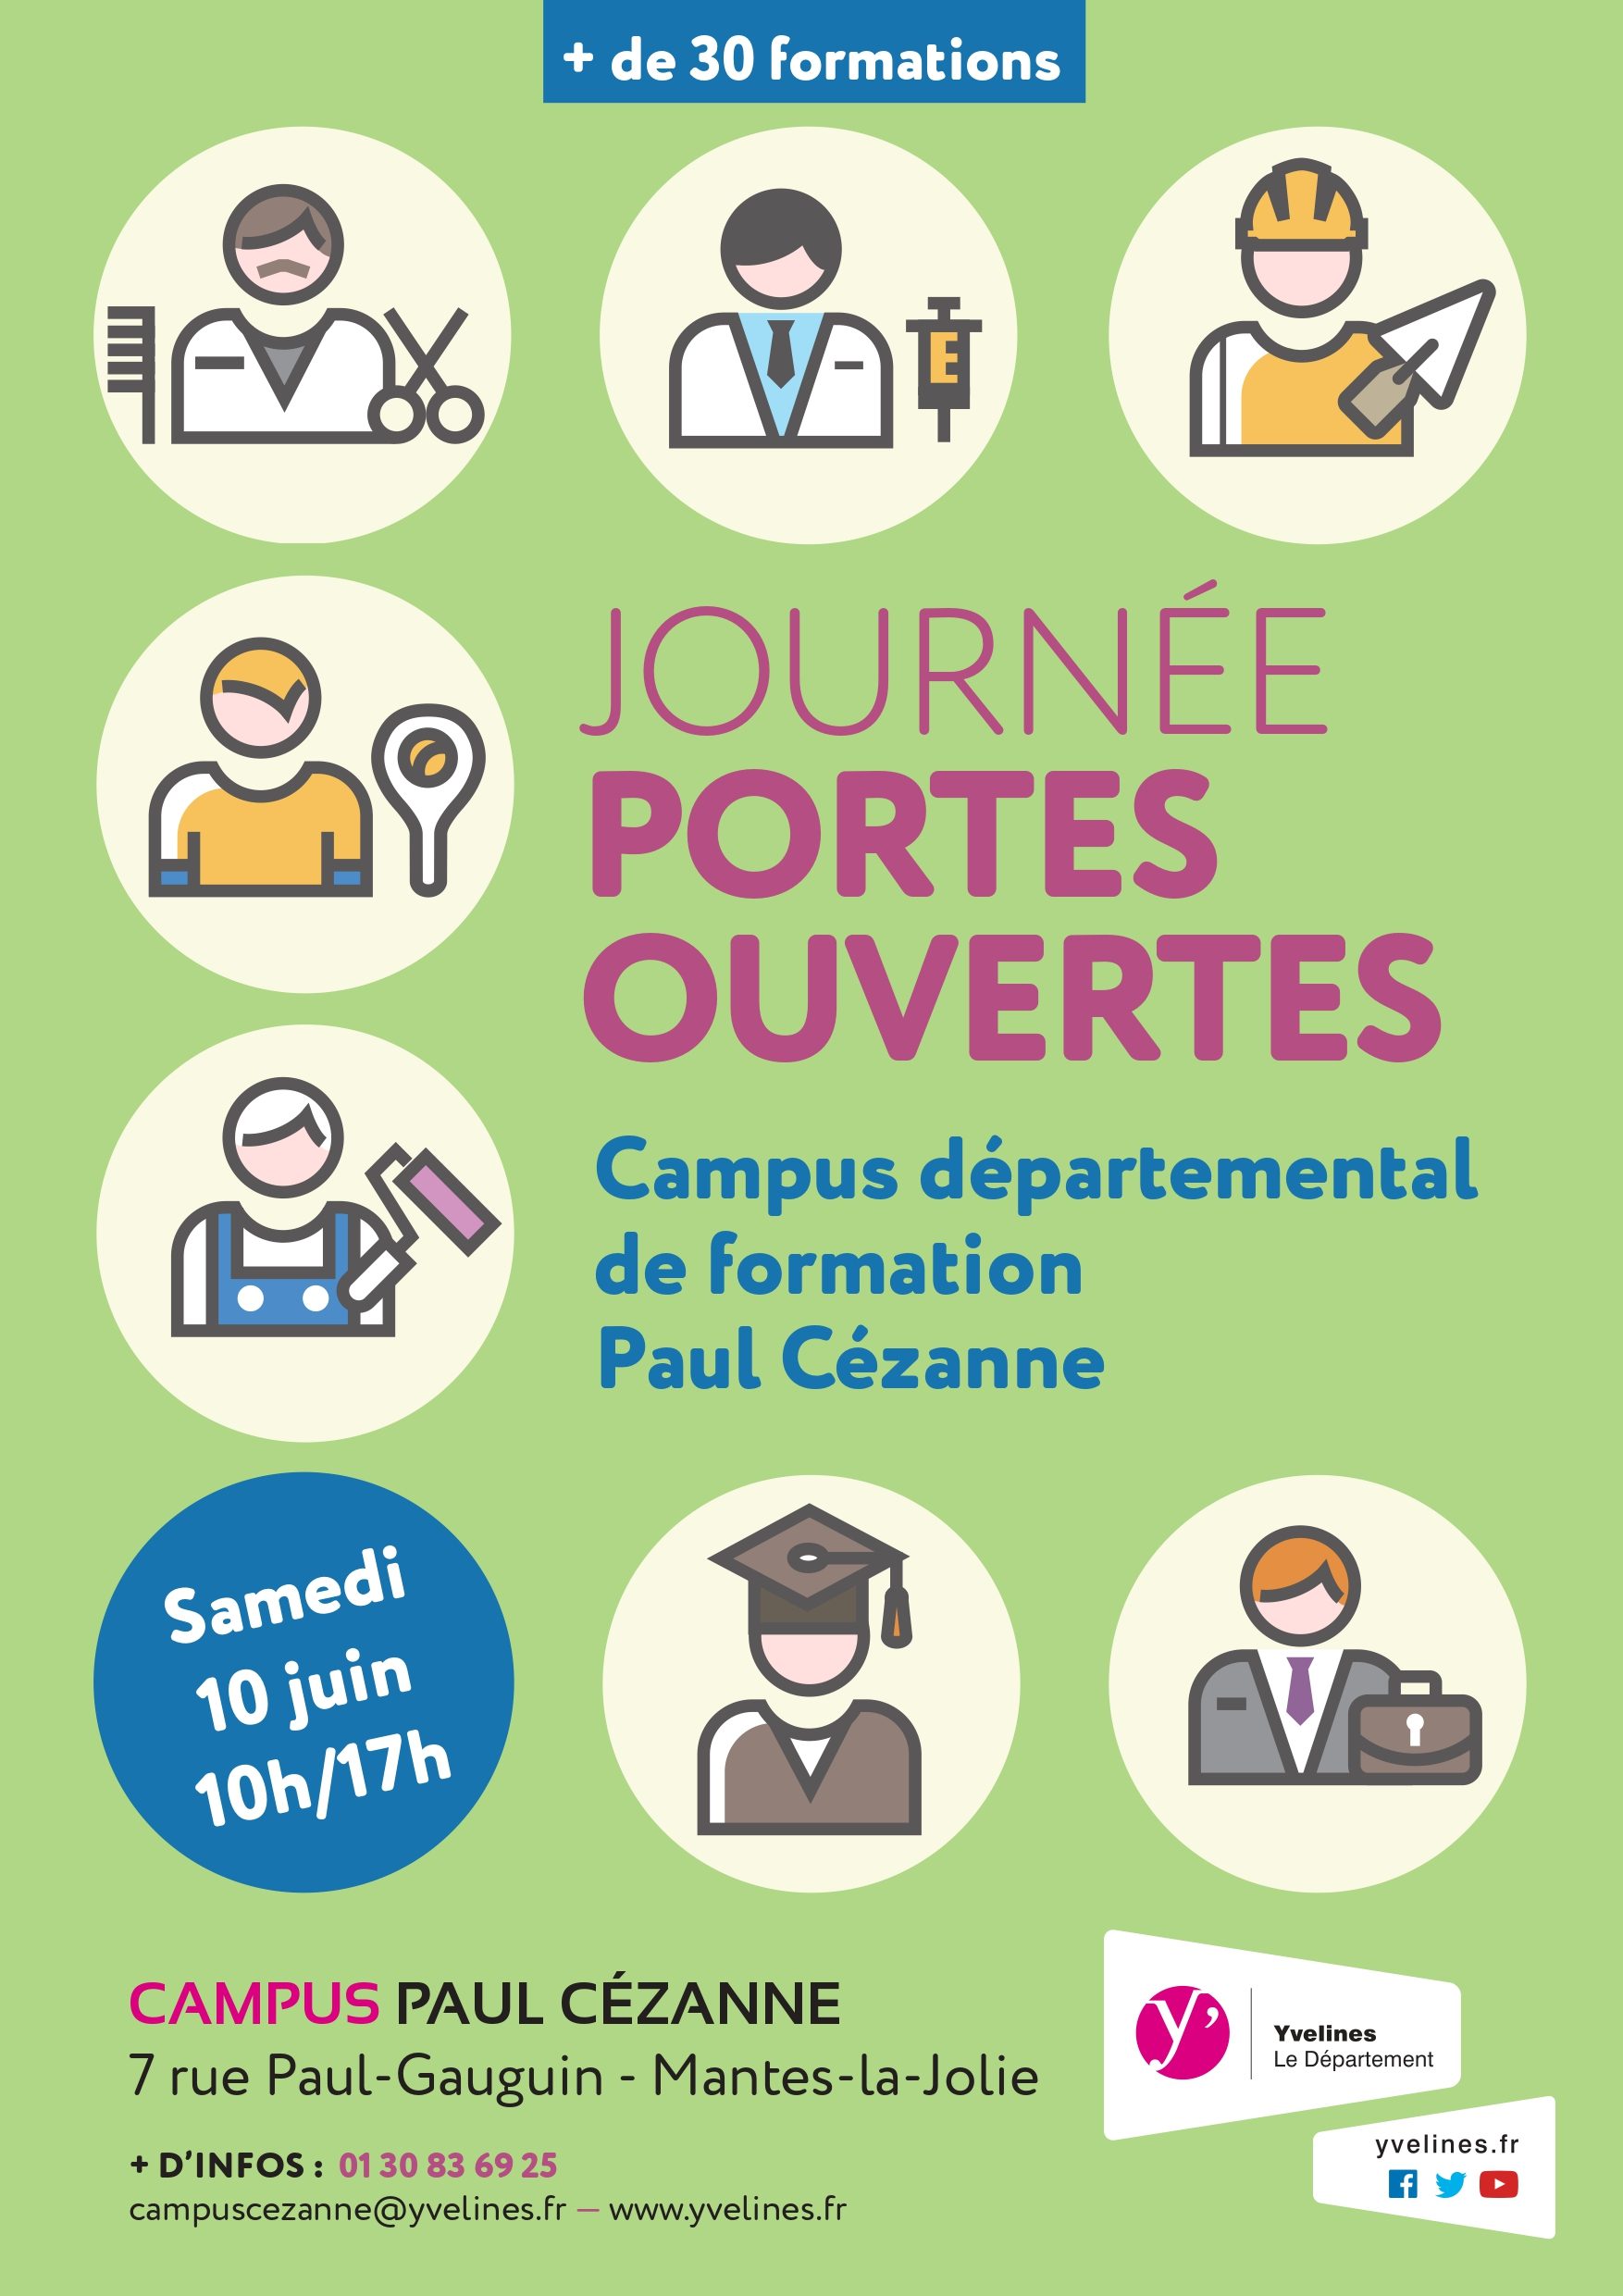 Le Campus « Paul Cézanne » organise sa première journée portes ouvertes à Mantes-la-Jolie